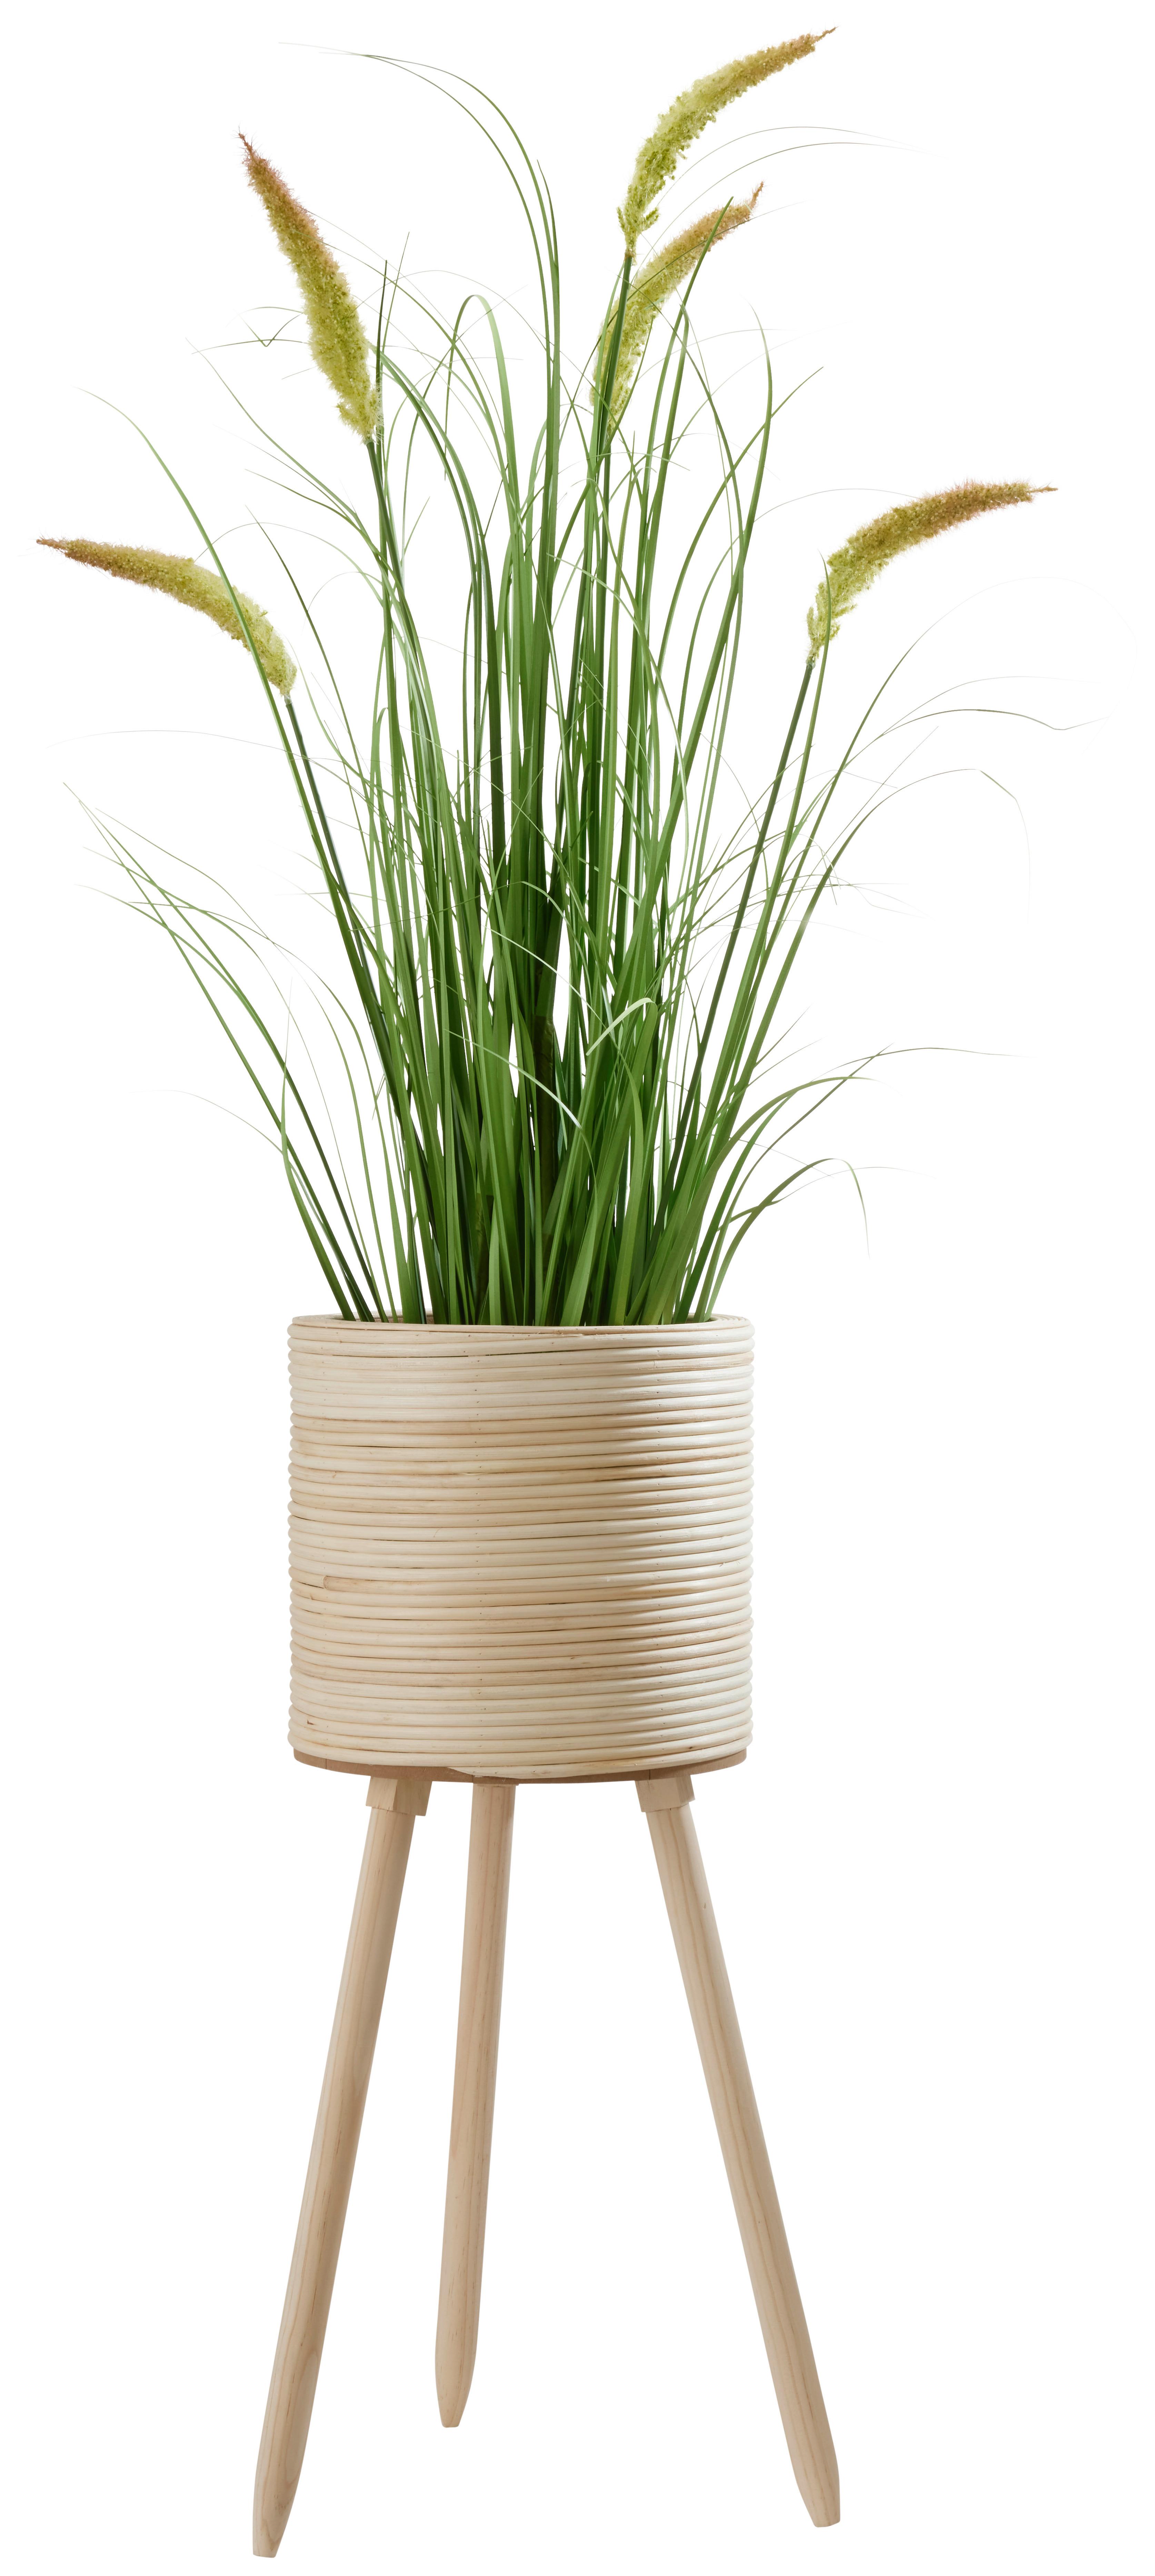 Obal Na Květináč Bamboo, V: 65,5cm - přírodní barvy, dřevo (26/65,5cm) - Premium Living